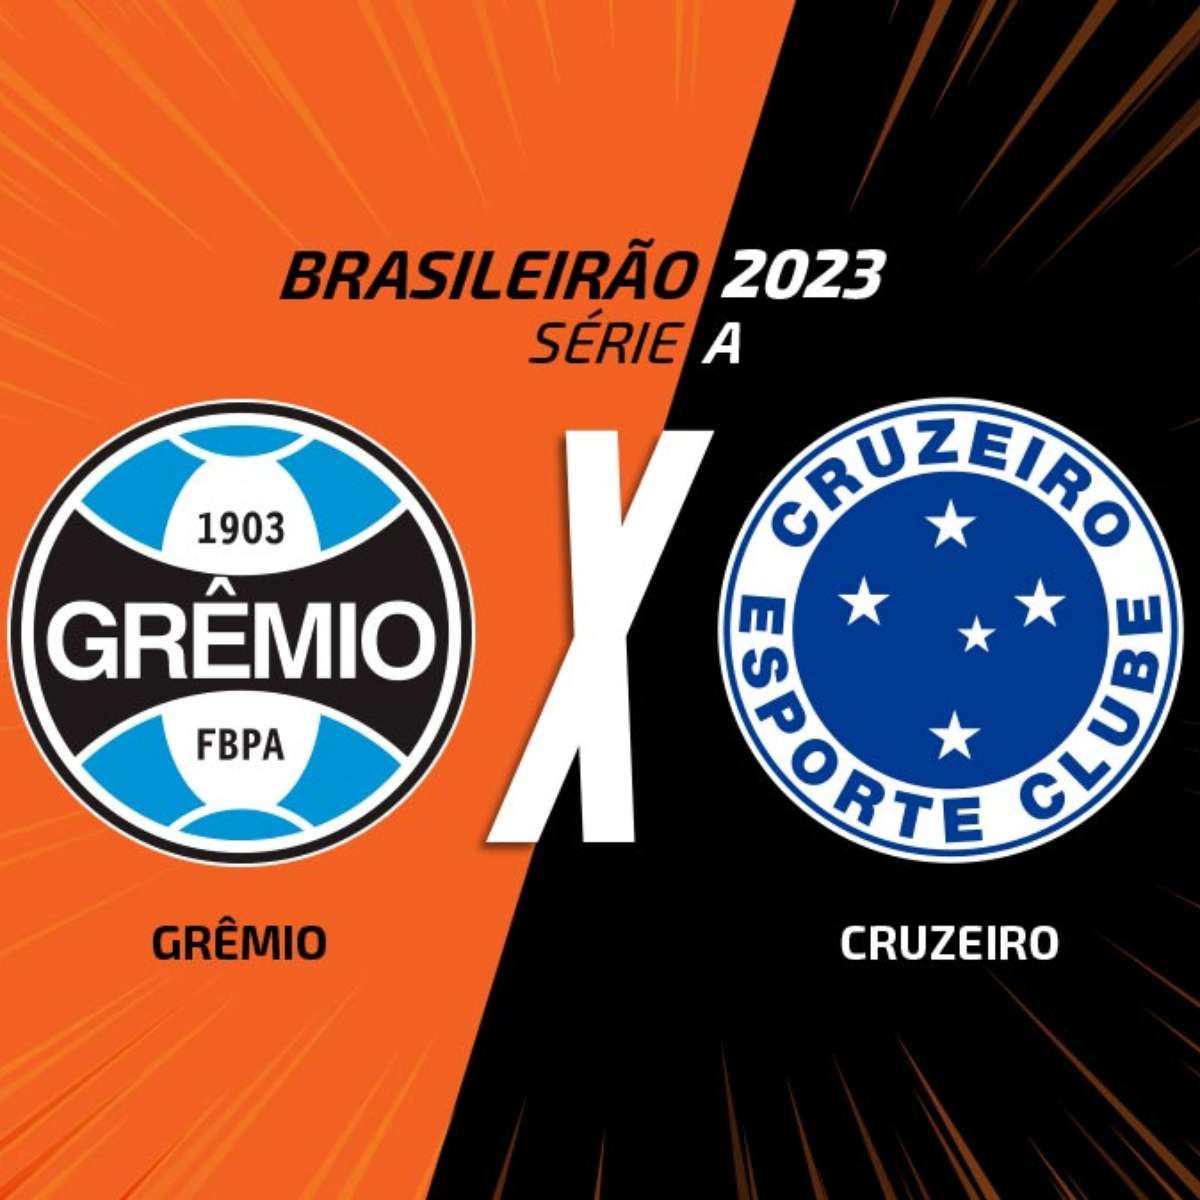 Gremio vs Brusque: A Clash of Titans in Brazilian Football